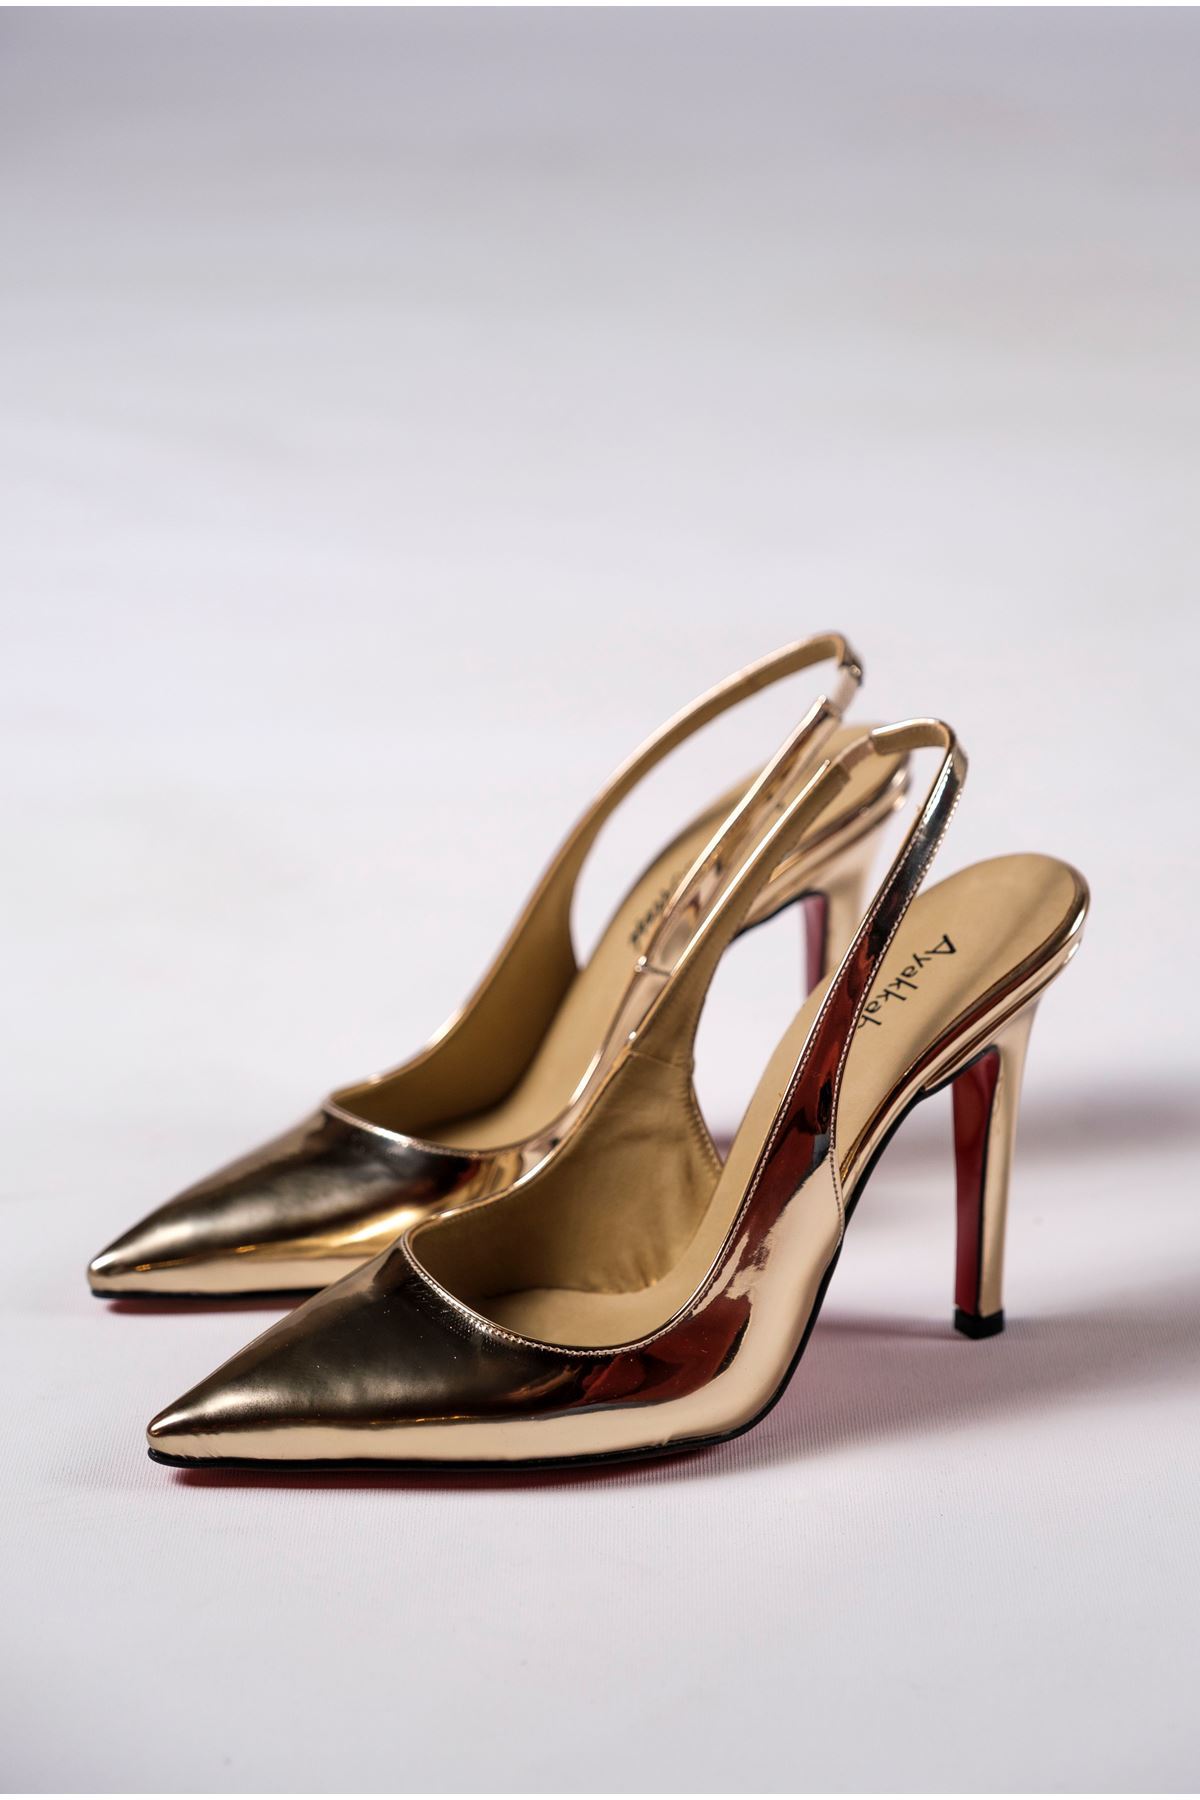 Light Altın Ayna  Kadın Topuklu Özel Tasarım Ayakkabı Stiletto Madison